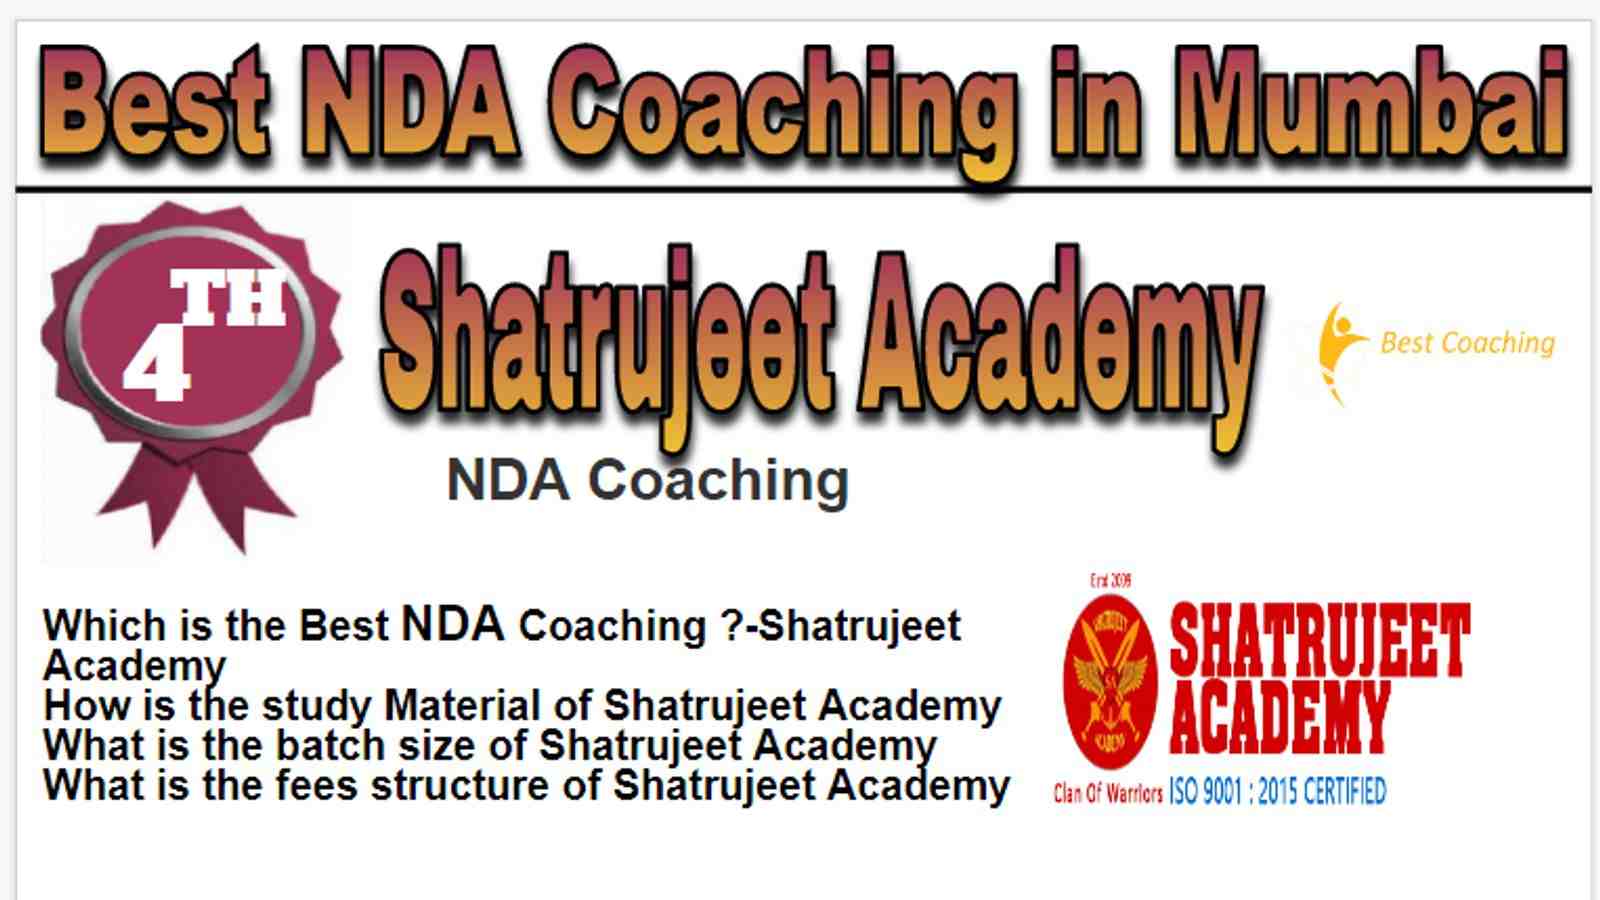 Rank 4 Best NDA Coaching in Mumbai